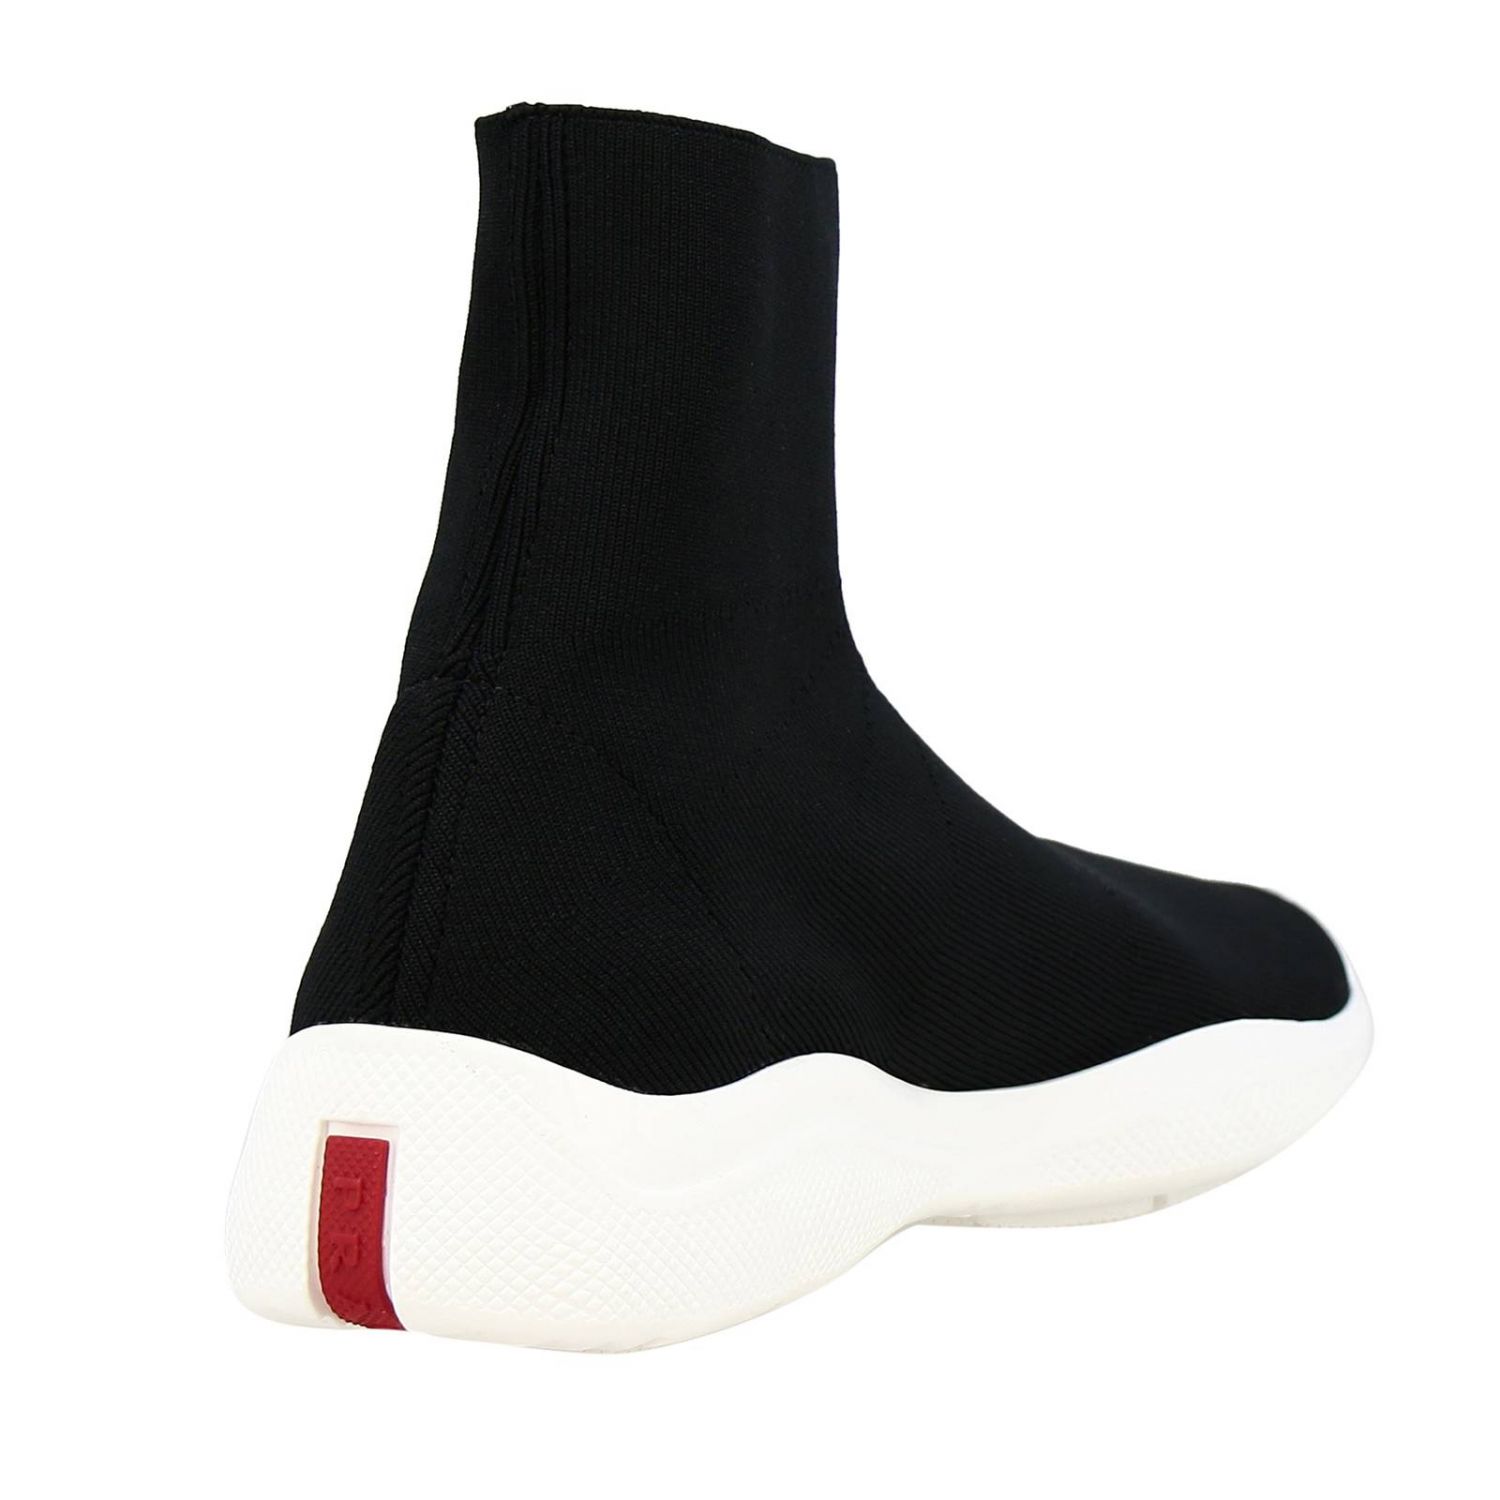 Slip-on a sock Sneakers Americas cup Prada in technical fabric | Sneakers  Prada Women Black | Sneakers Prada 3T6424 3V80 Giglio EN